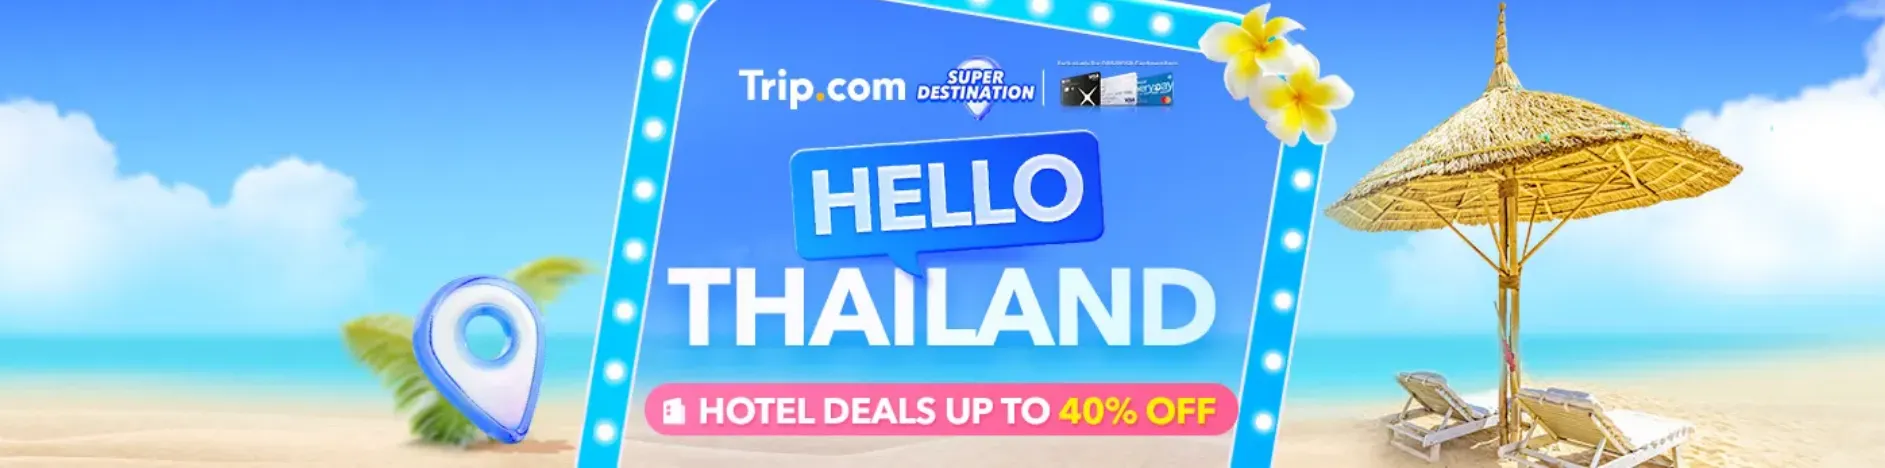 Trip.com Promo Code Singapore: Super Destination, Thailand